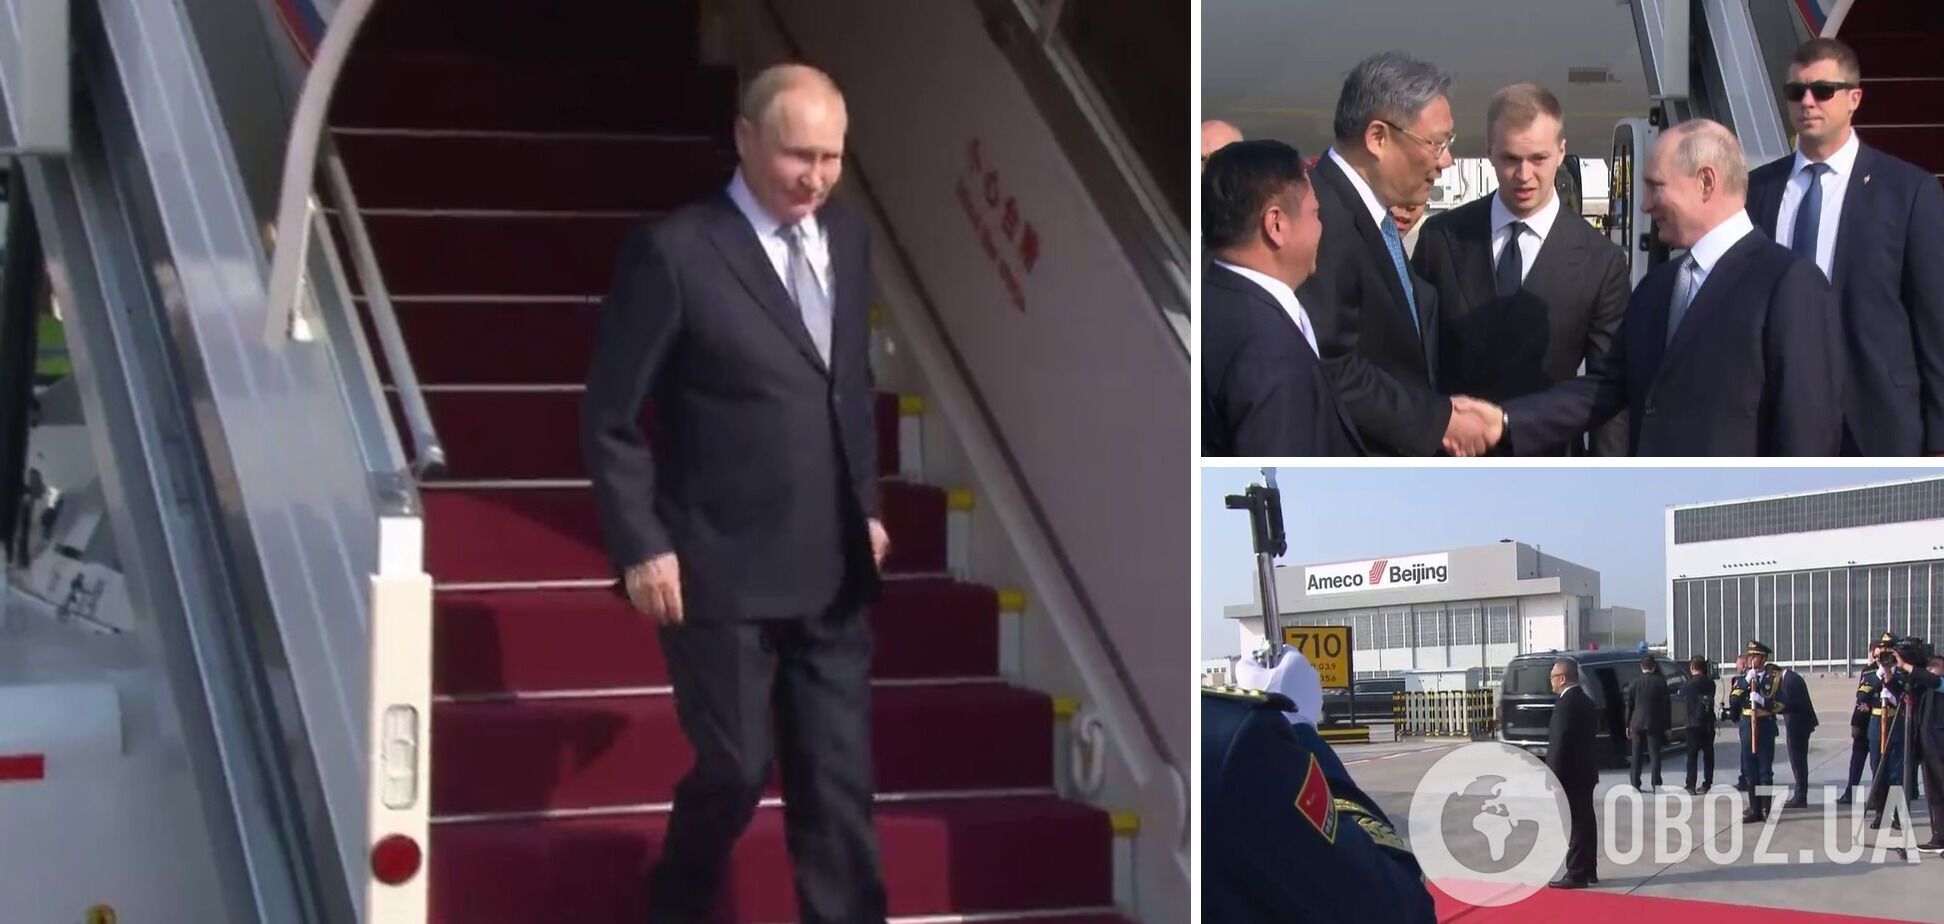 Путин прибыл в Китай на переговоры с Си Цзиньпином: что стоит за союзом Москвы и Пекина и какие угрозы для Украины